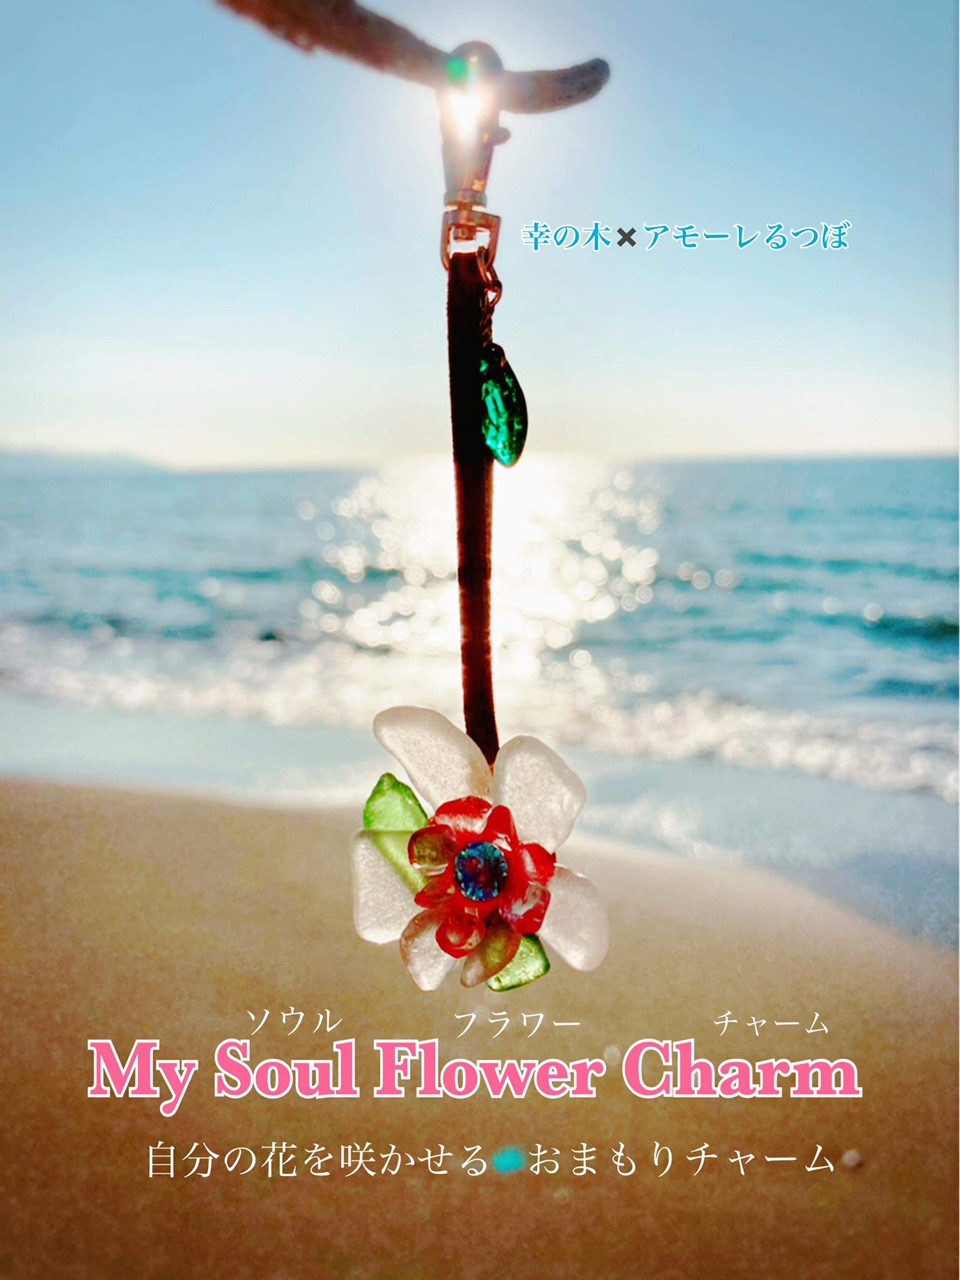 ワークショップ第1弾『創ろう自分のお花♪My Soul Flower Charm♪』